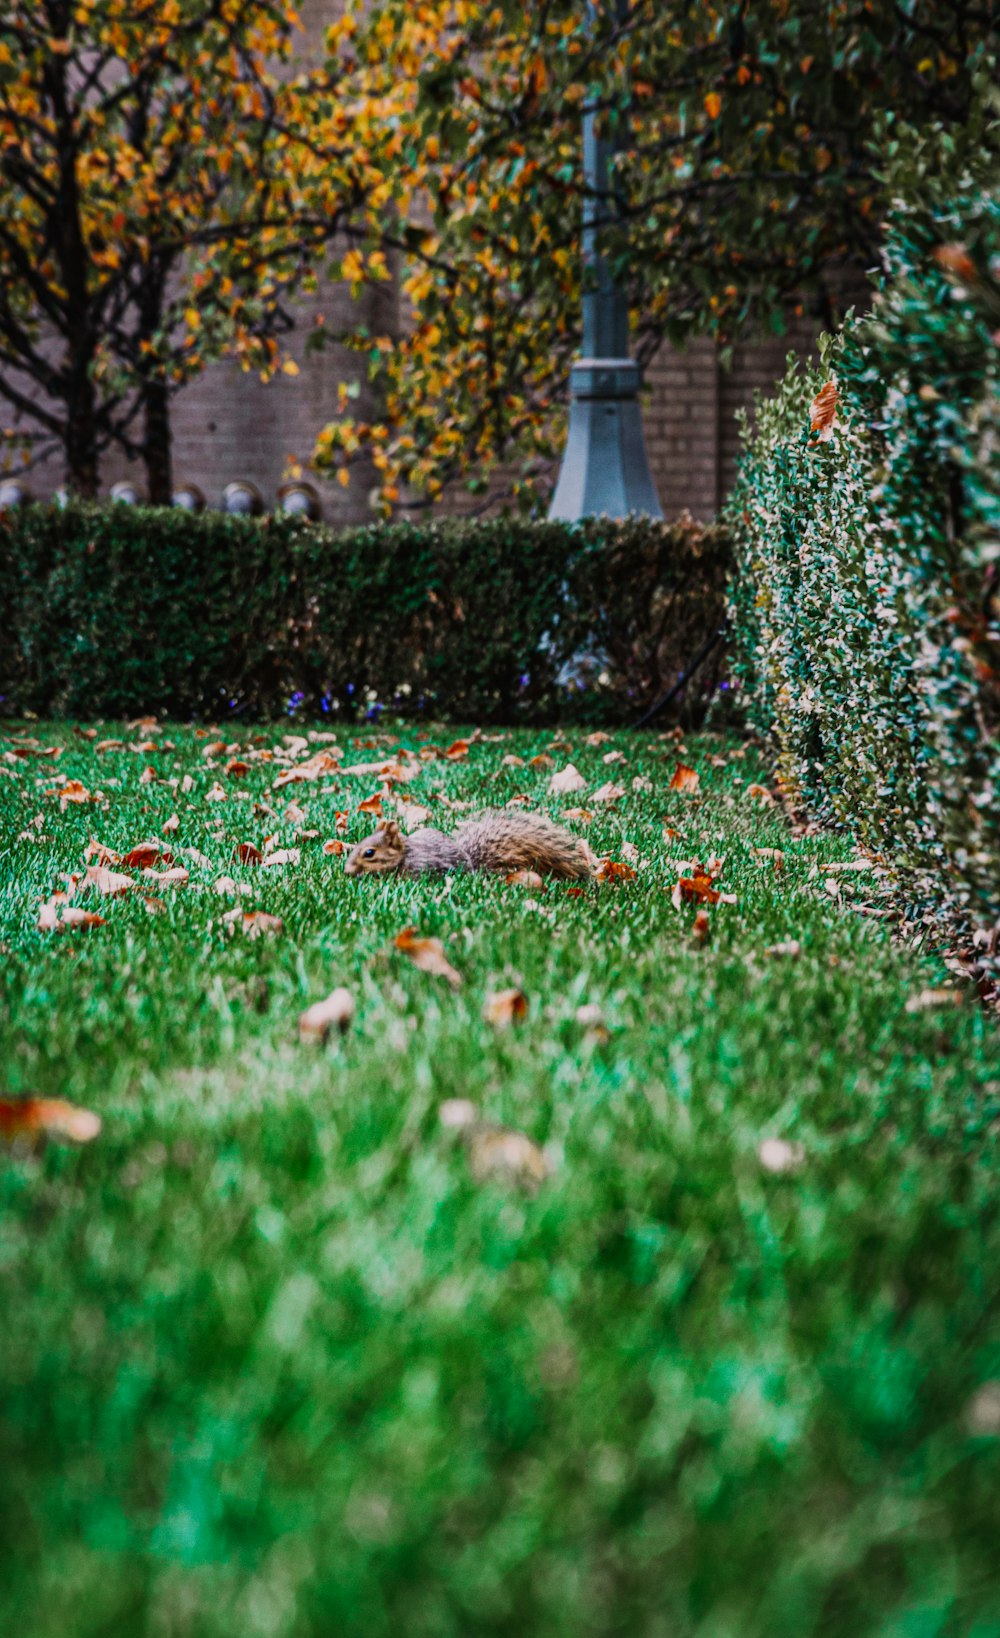 scoiattolo marrone su erba verde durante il giorno